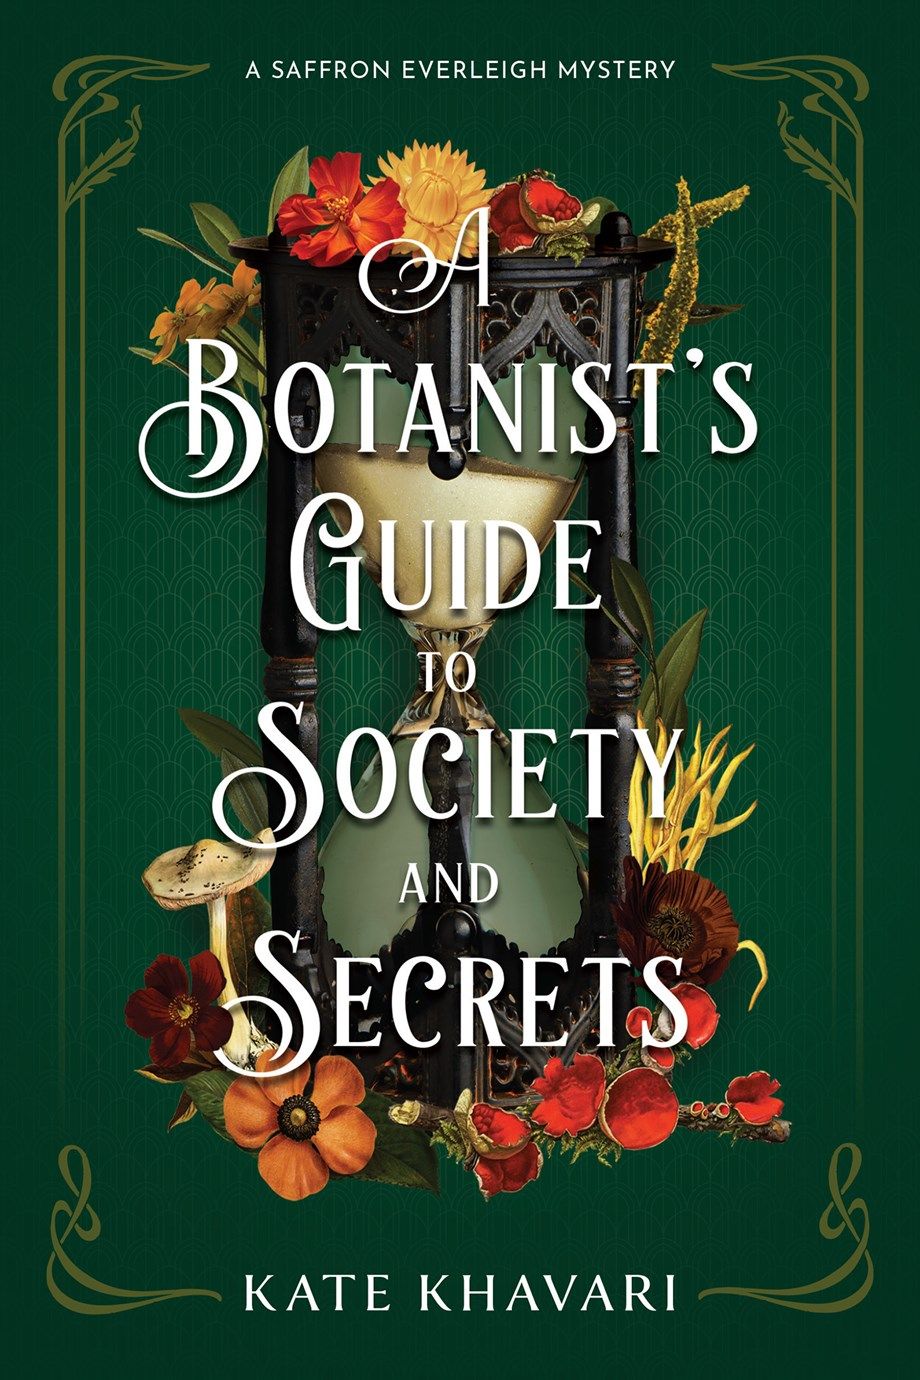 Couverture du Guide du botaniste Société et secrets